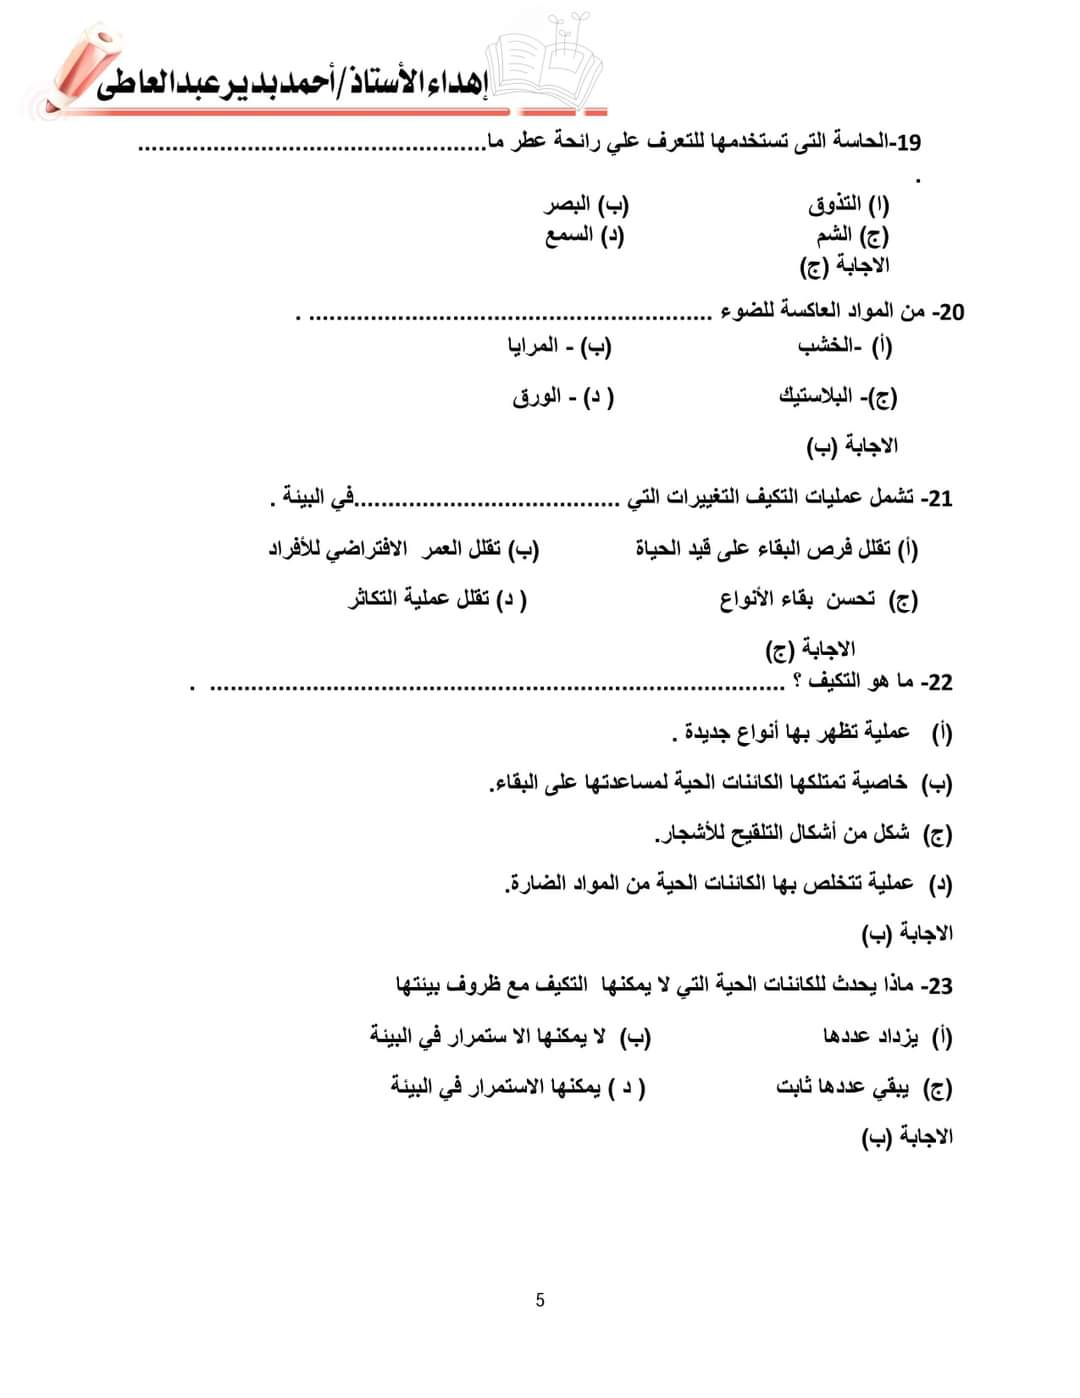 حل نماذج اسئلة الوزارة علوم رابعة ابتدائي - احمد بدير عبد العاطي